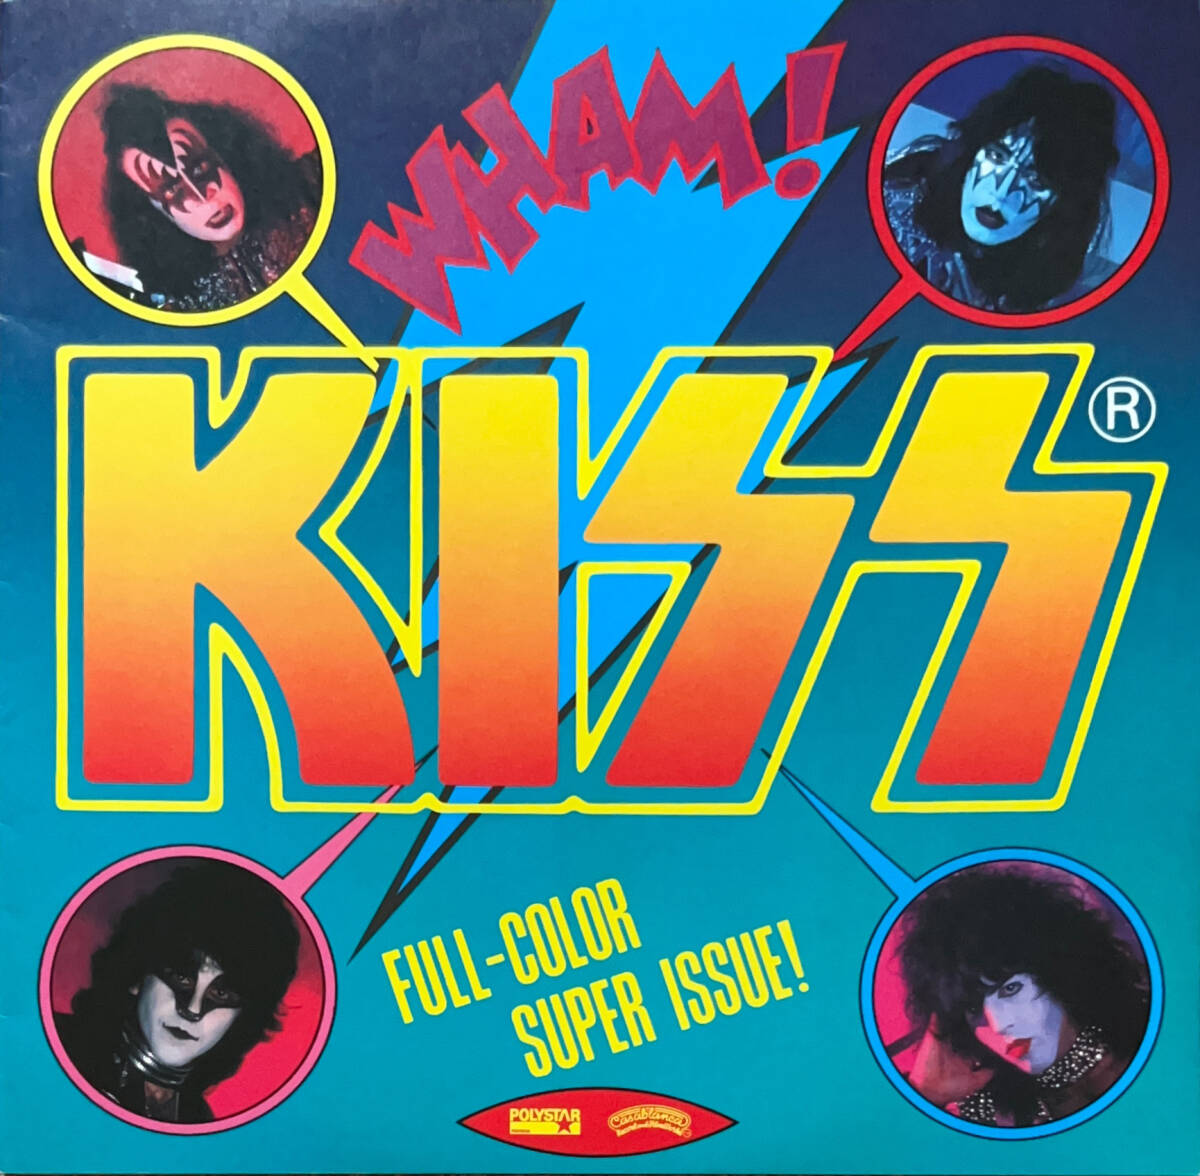 KISS キッス / KILLERS キラーズ / LP レコード 帯付き 国内盤 28S-58 初期予約特典カラーポートレイト付 美盤_画像4